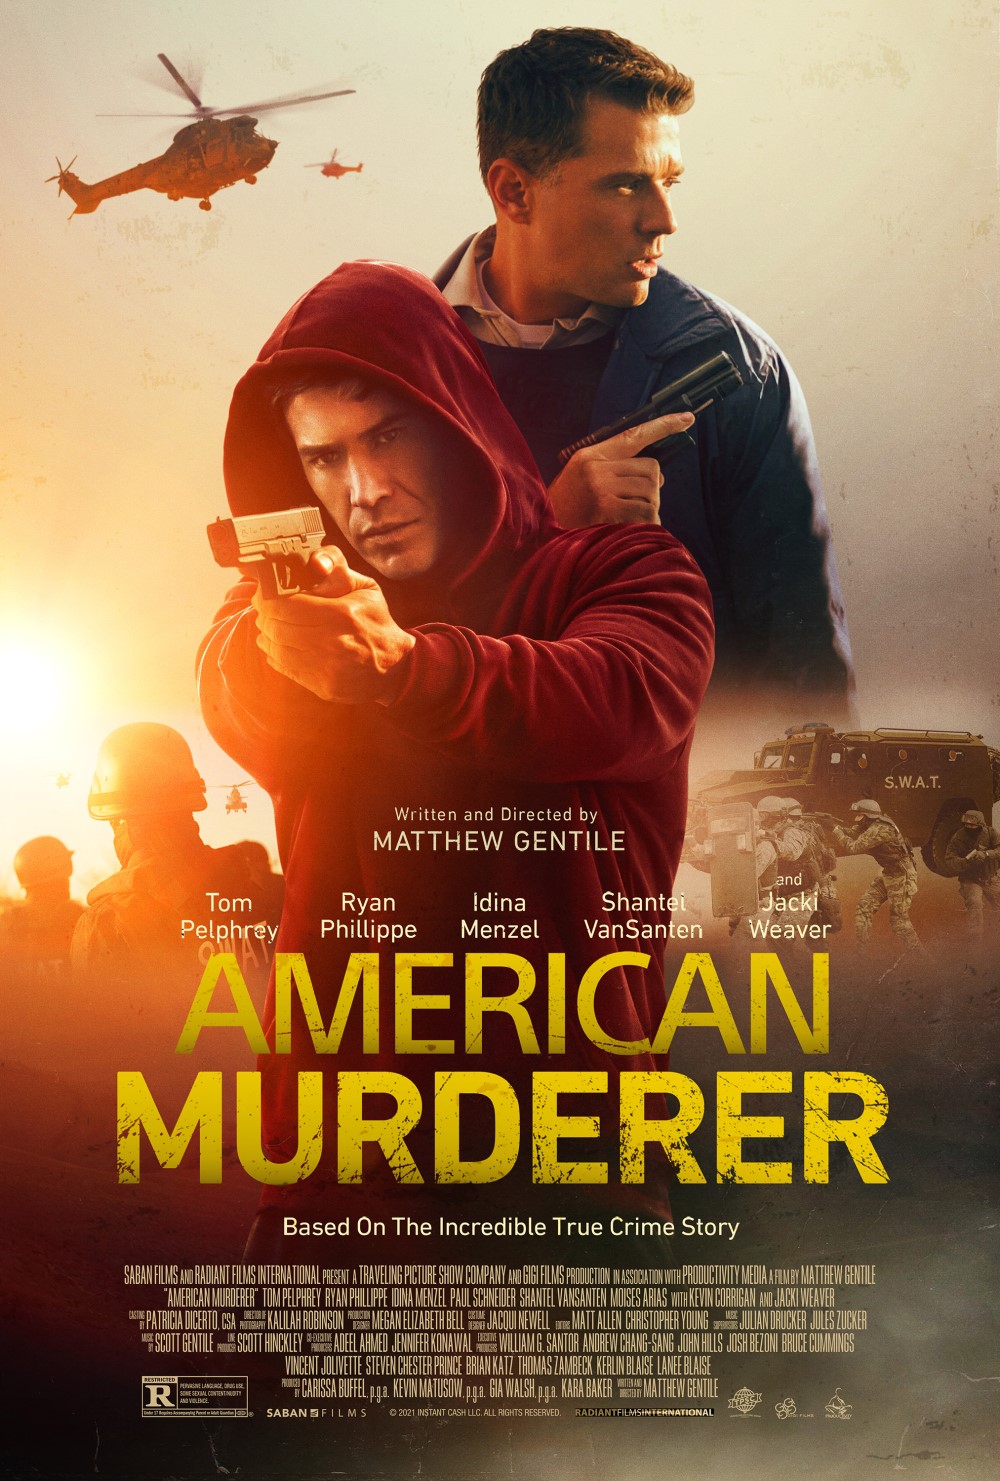 American Murderer Trailer & Poster 2